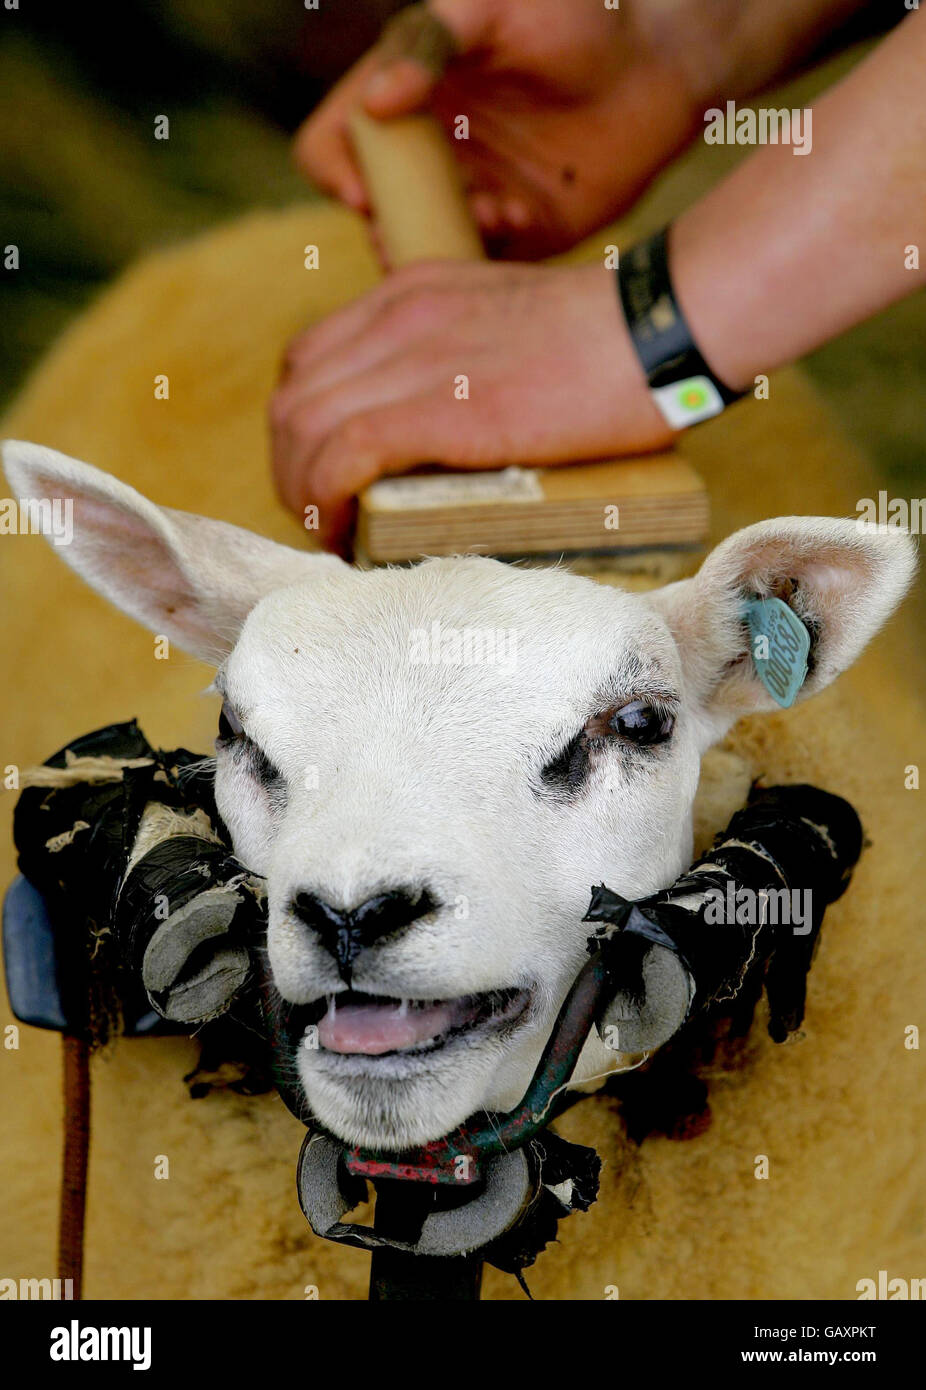 Royal Highland Show, 2008.Un mouton Beltex est brossé avant d'être jugé au 168e Royal Highland Show 2008 à Ingliston, en Écosse. Banque D'Images